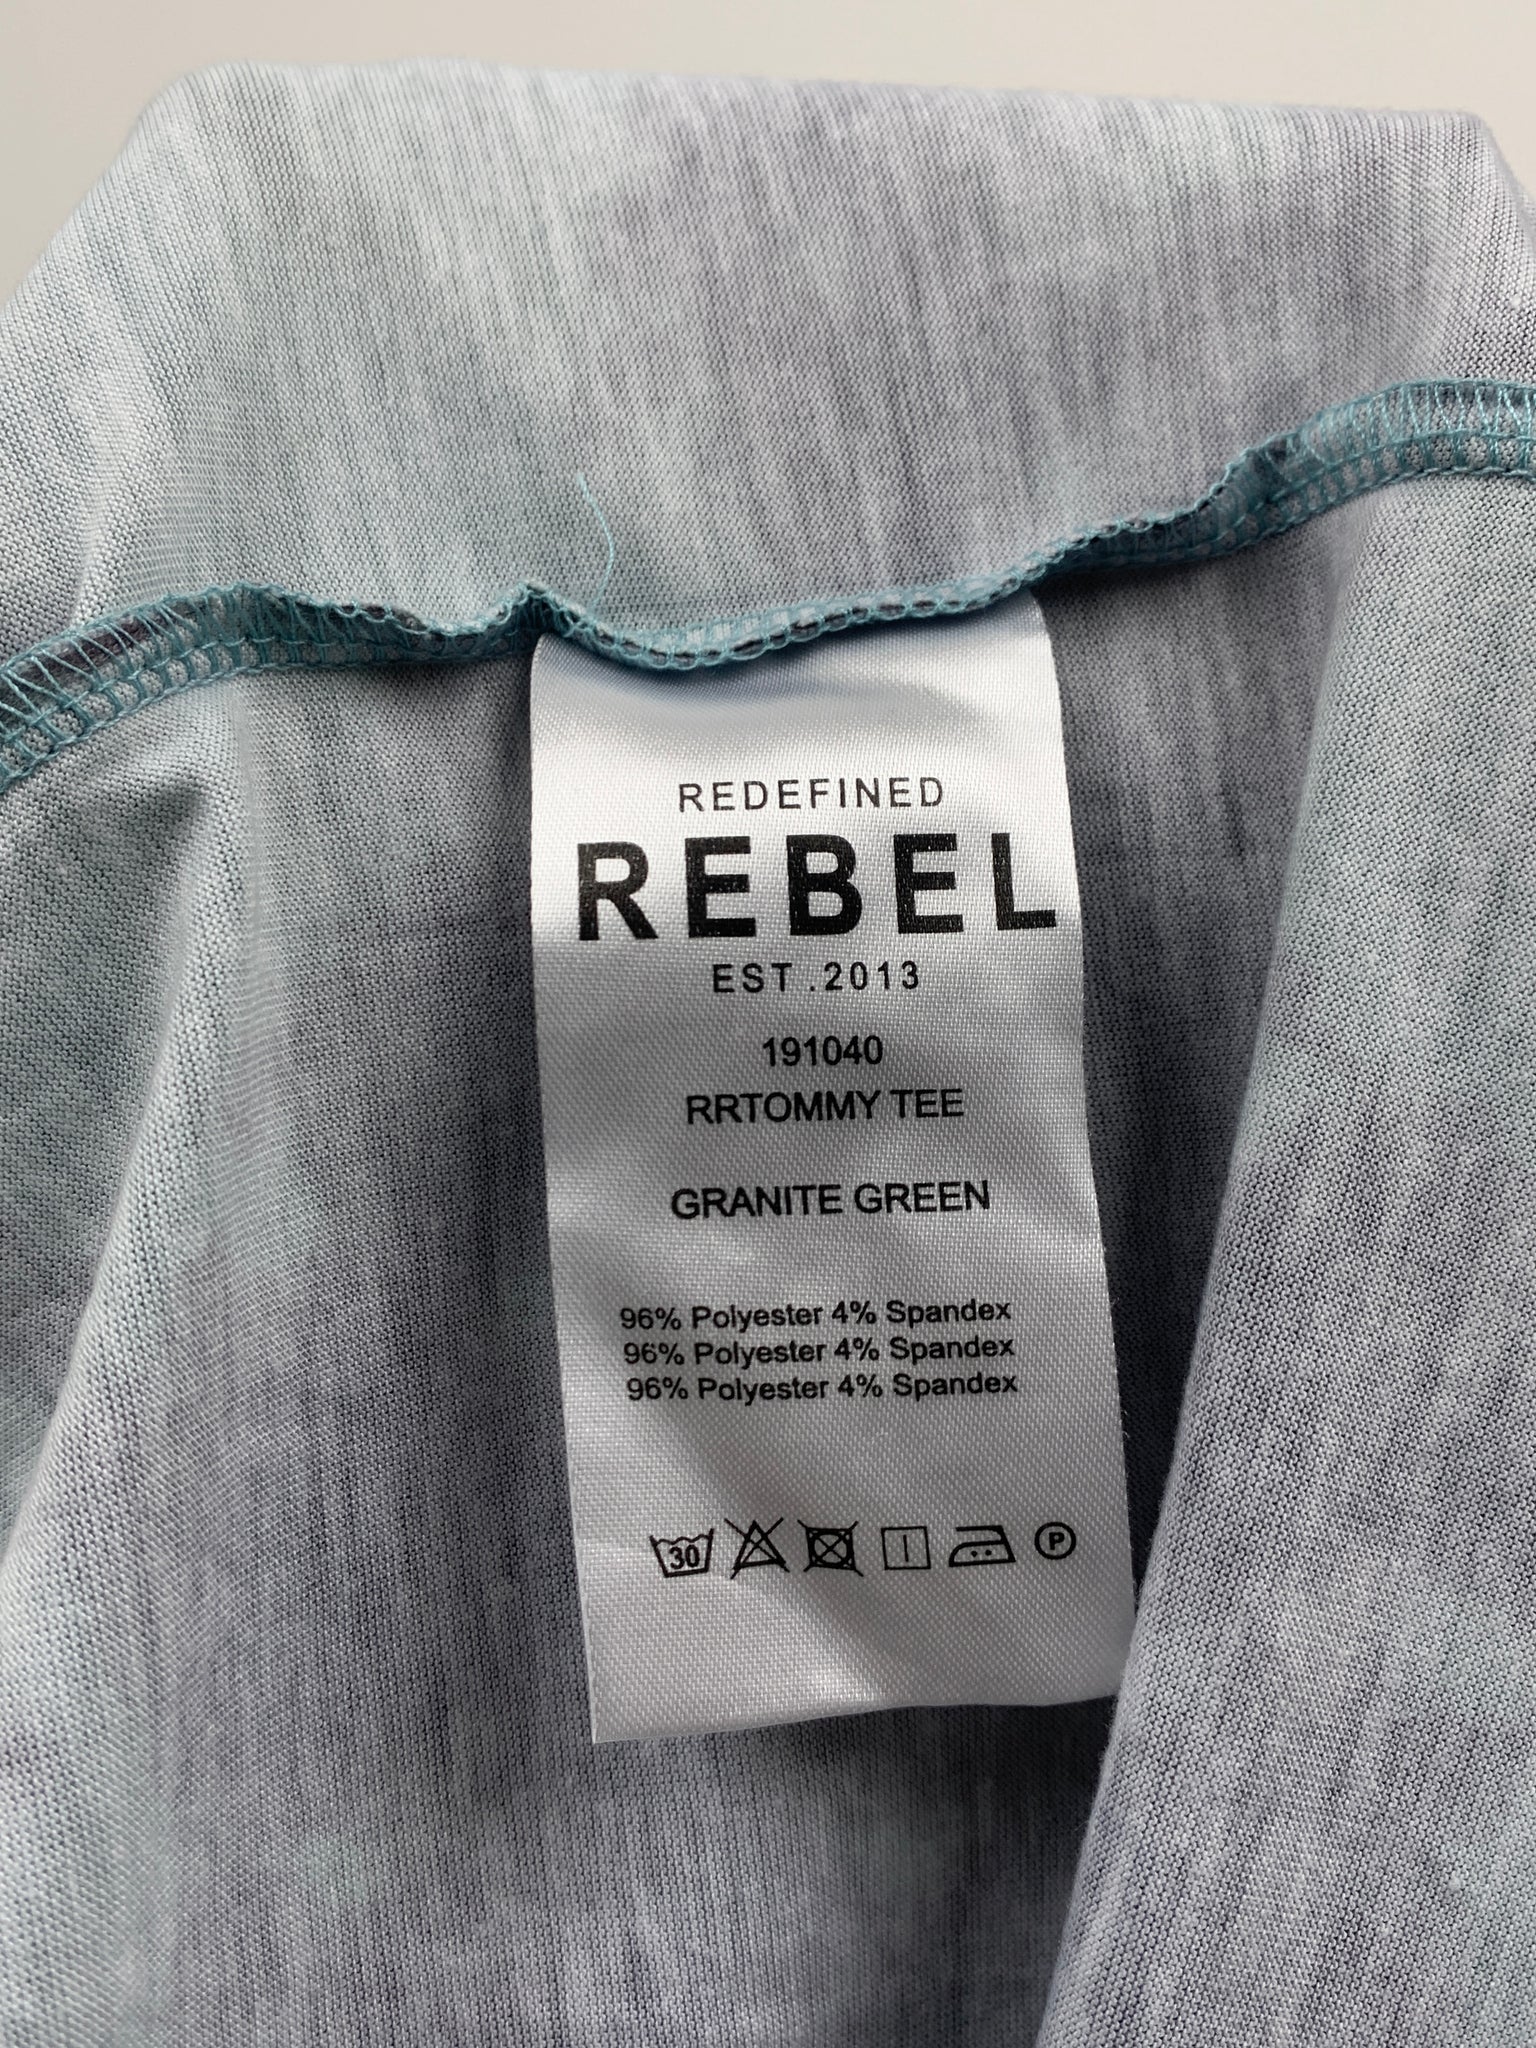 Redefined rebel T-shirt